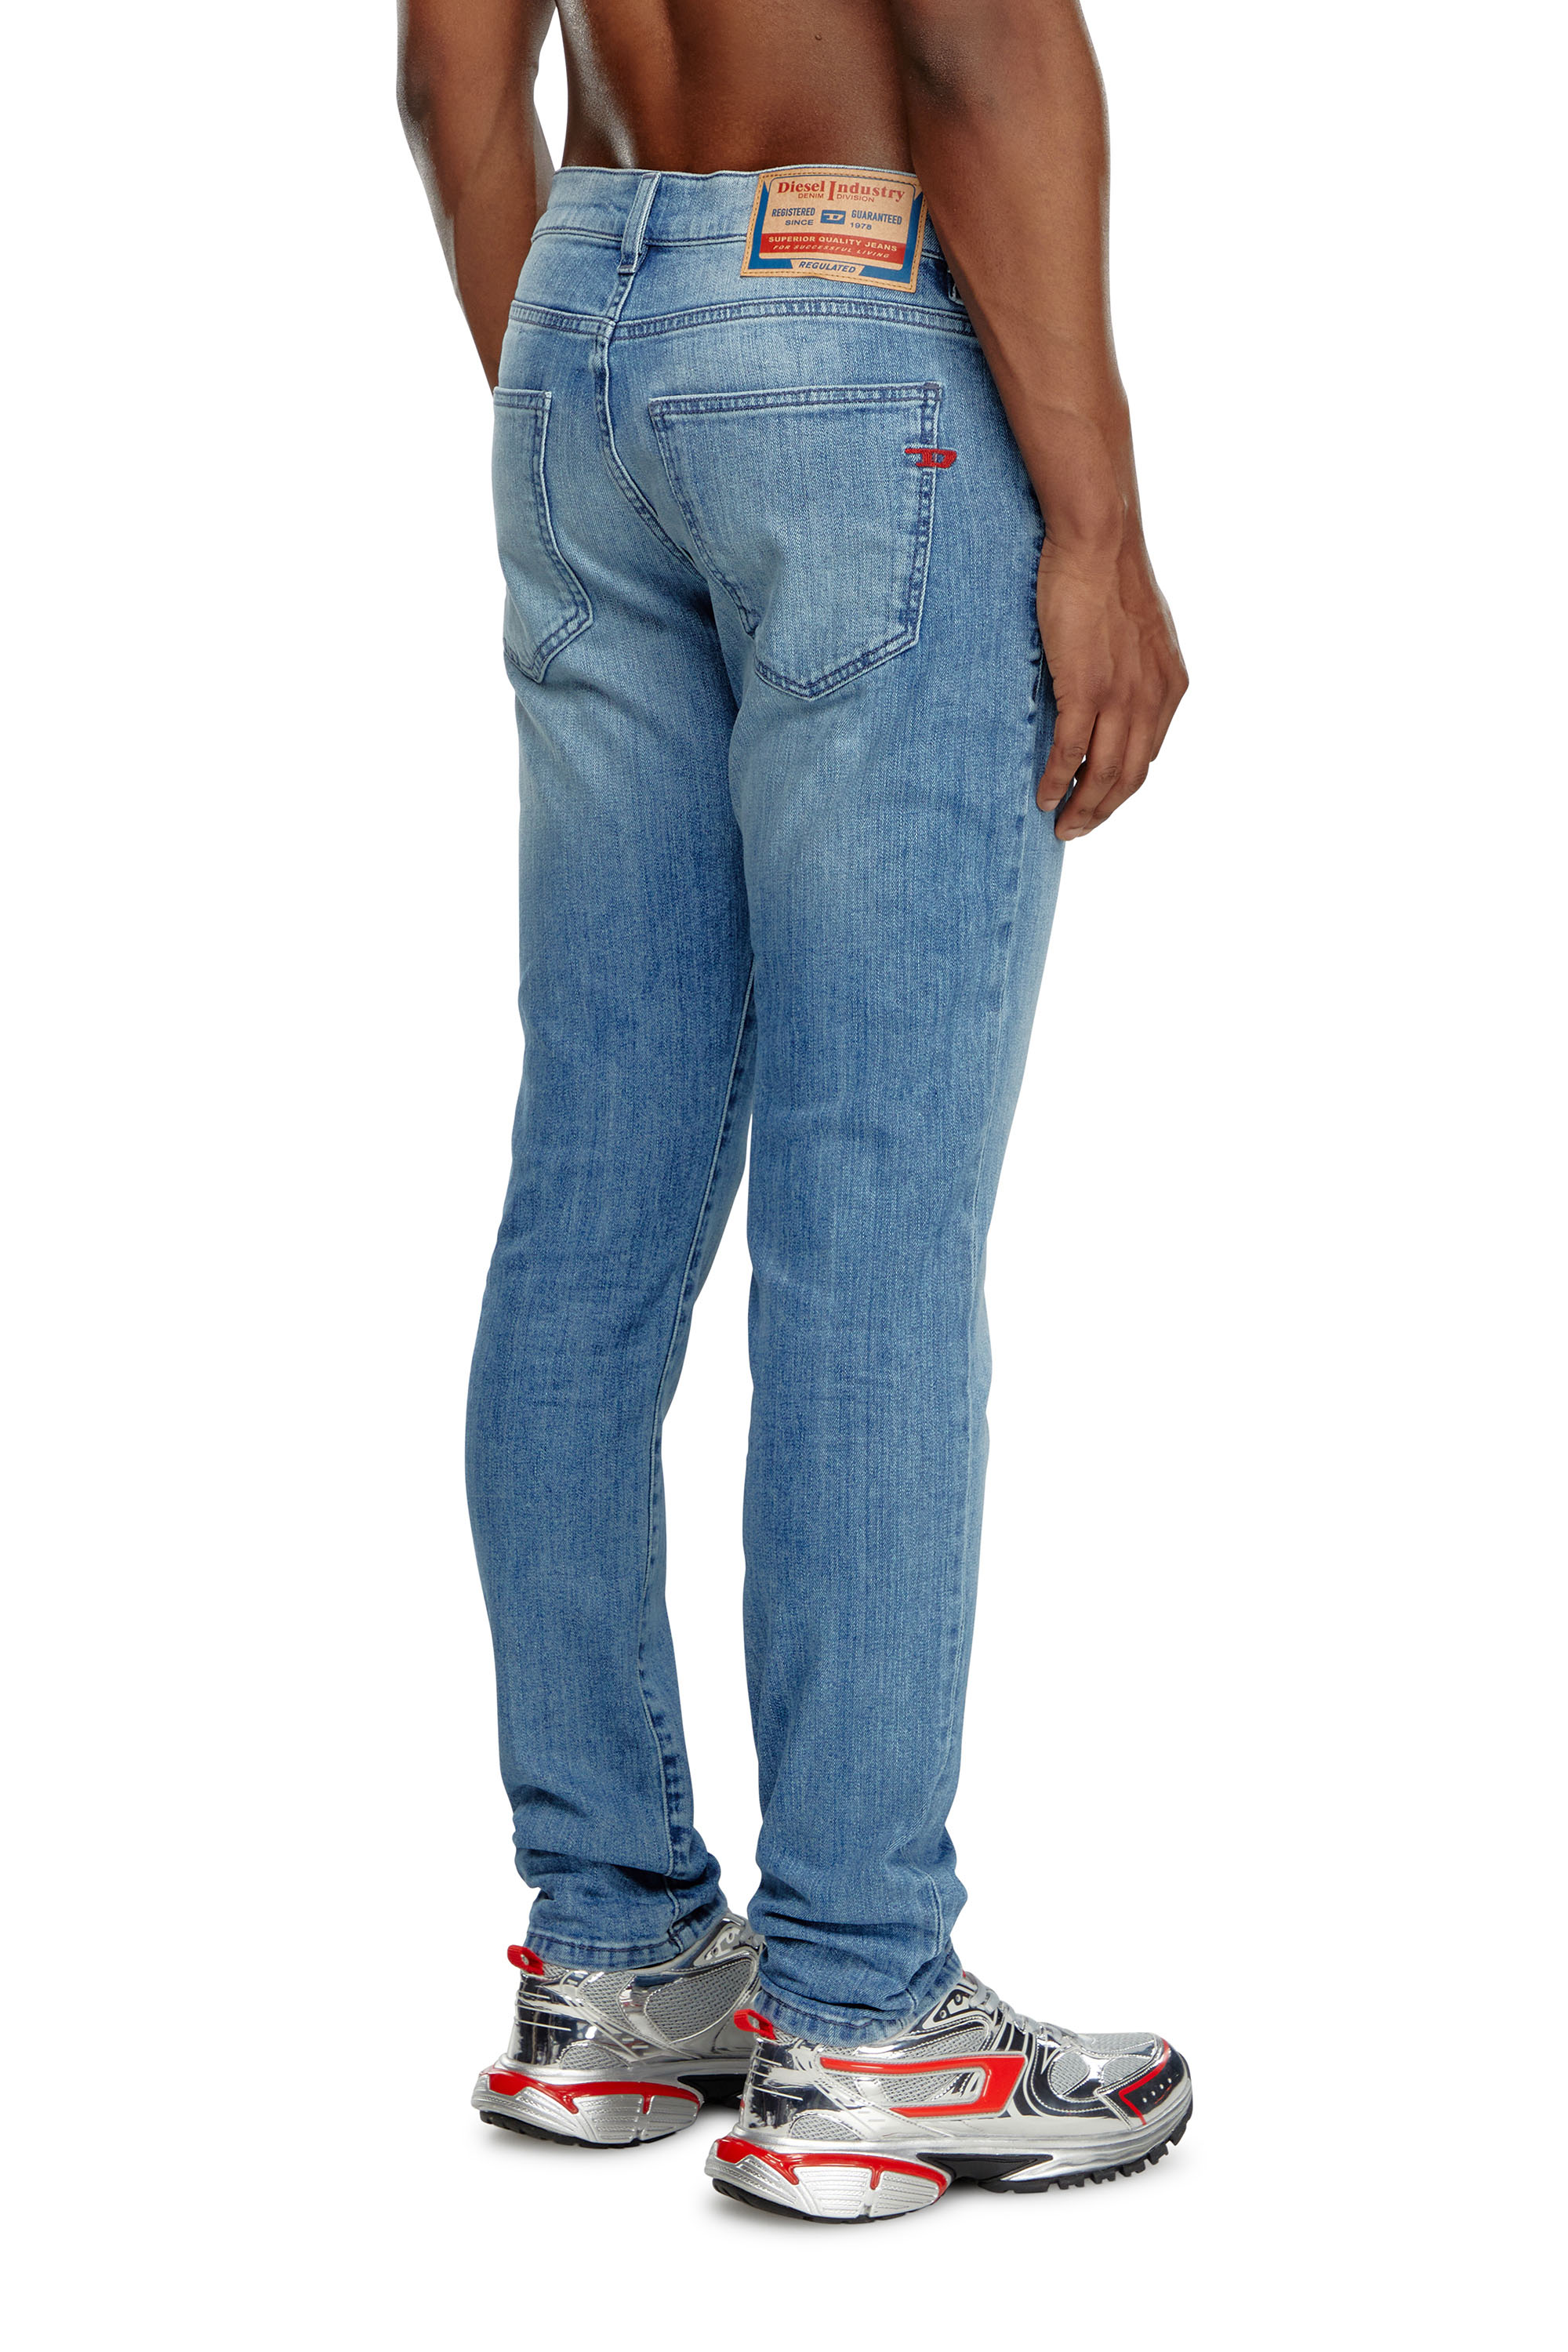 Diesel - Slim Jeans 2019 D-Strukt 0GRDI, Hombre Slim Jeans - 2019 D-Strukt in Azul marino - Image 4